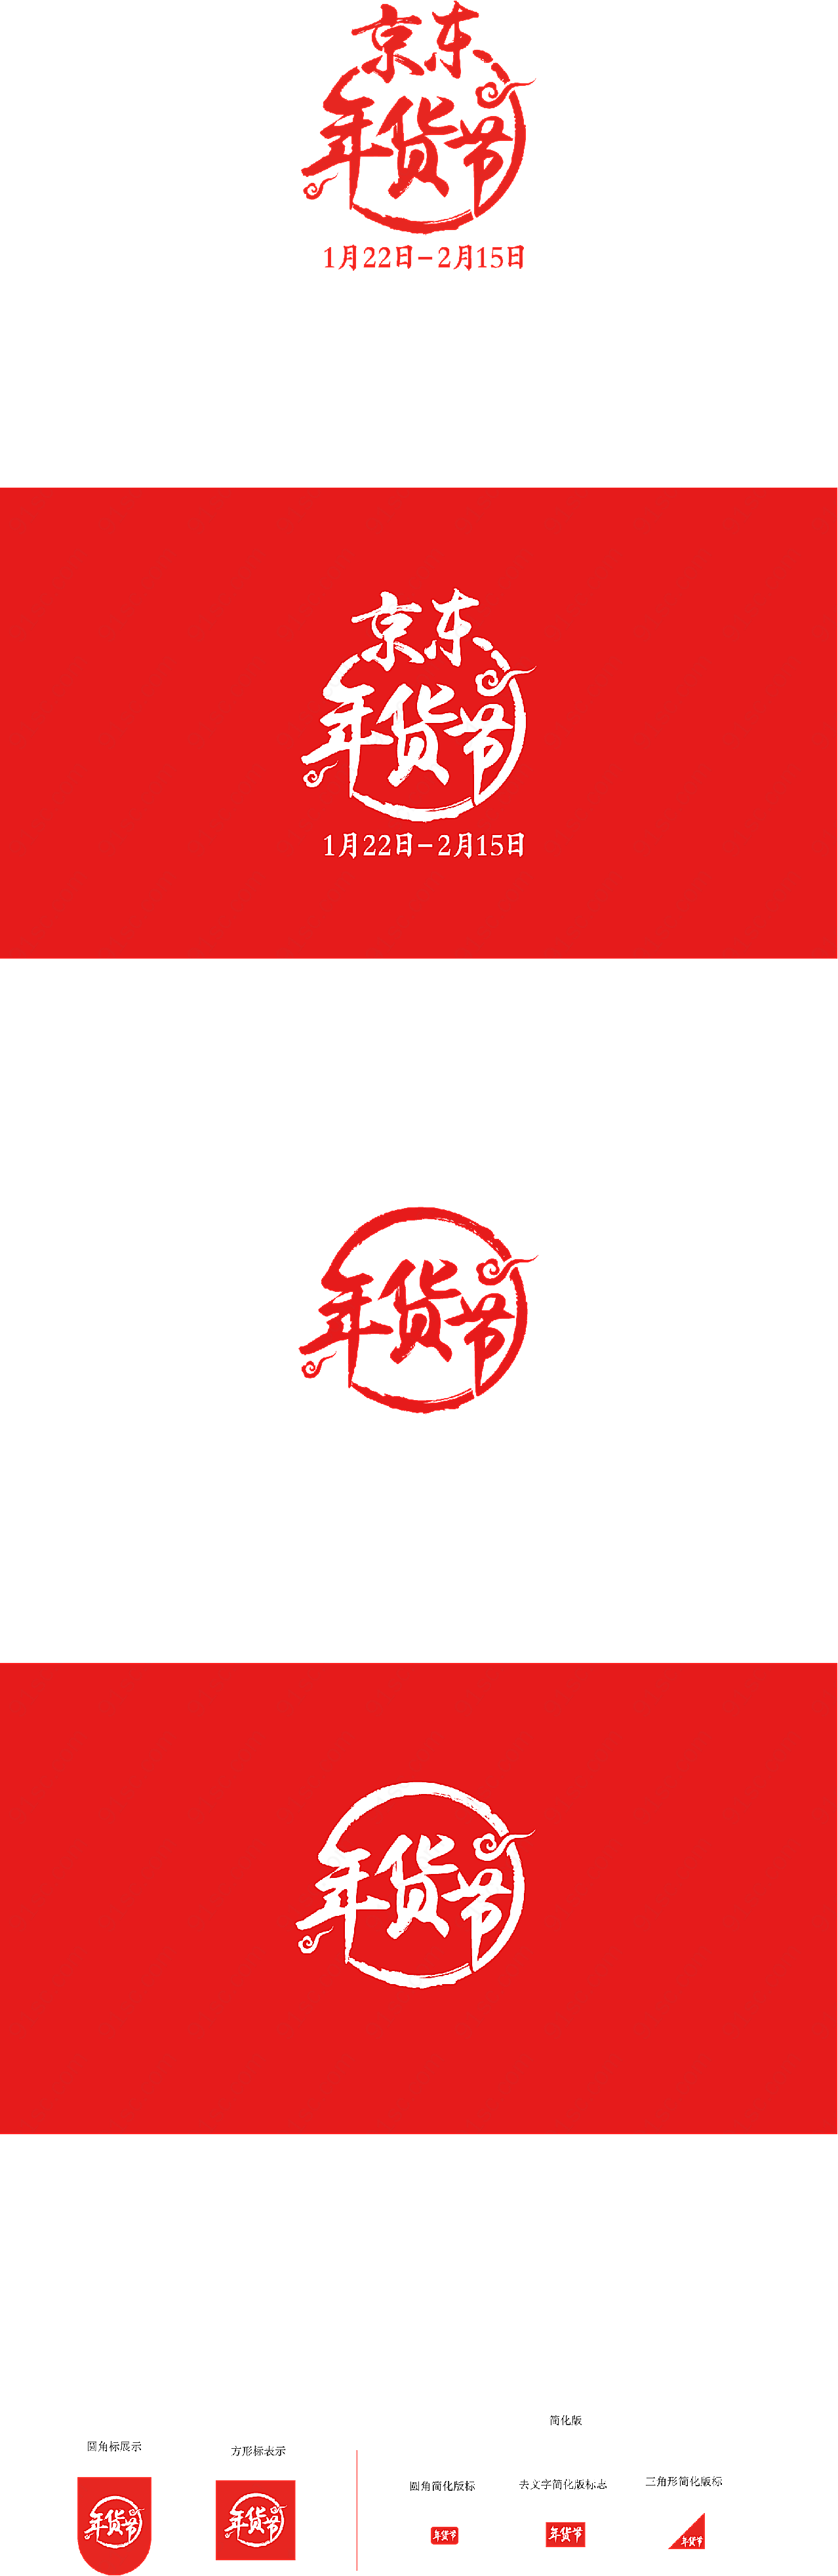 京东年货节logo矢量服务行业标志